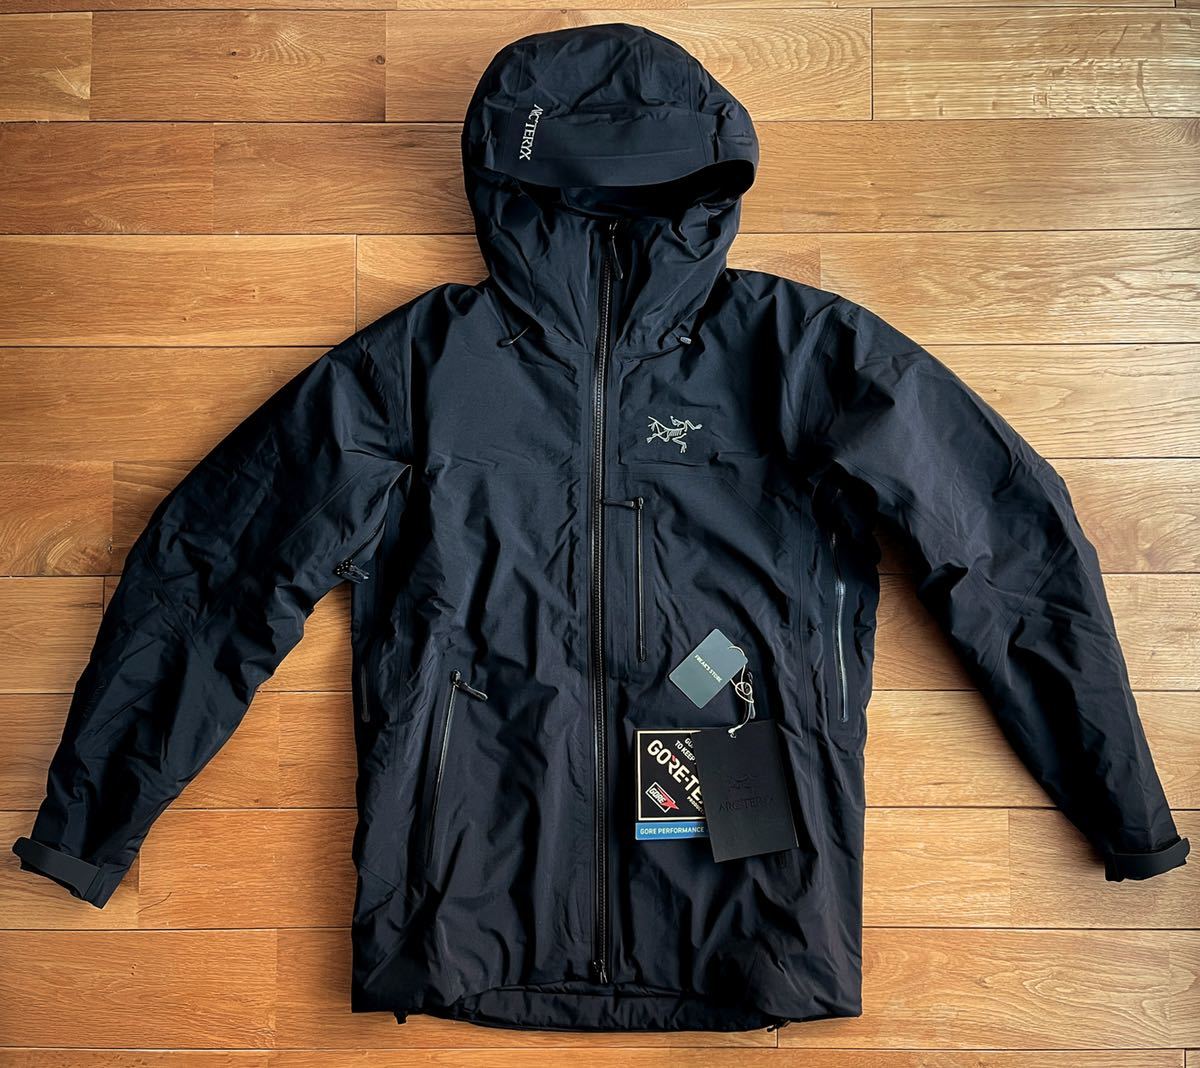 【2022 国内正規 新品】ARC'TERYX Beta Insulated Jacket Men's Black Small アークテリクス ベータインサレーテッド ジャケット GORE-TEX